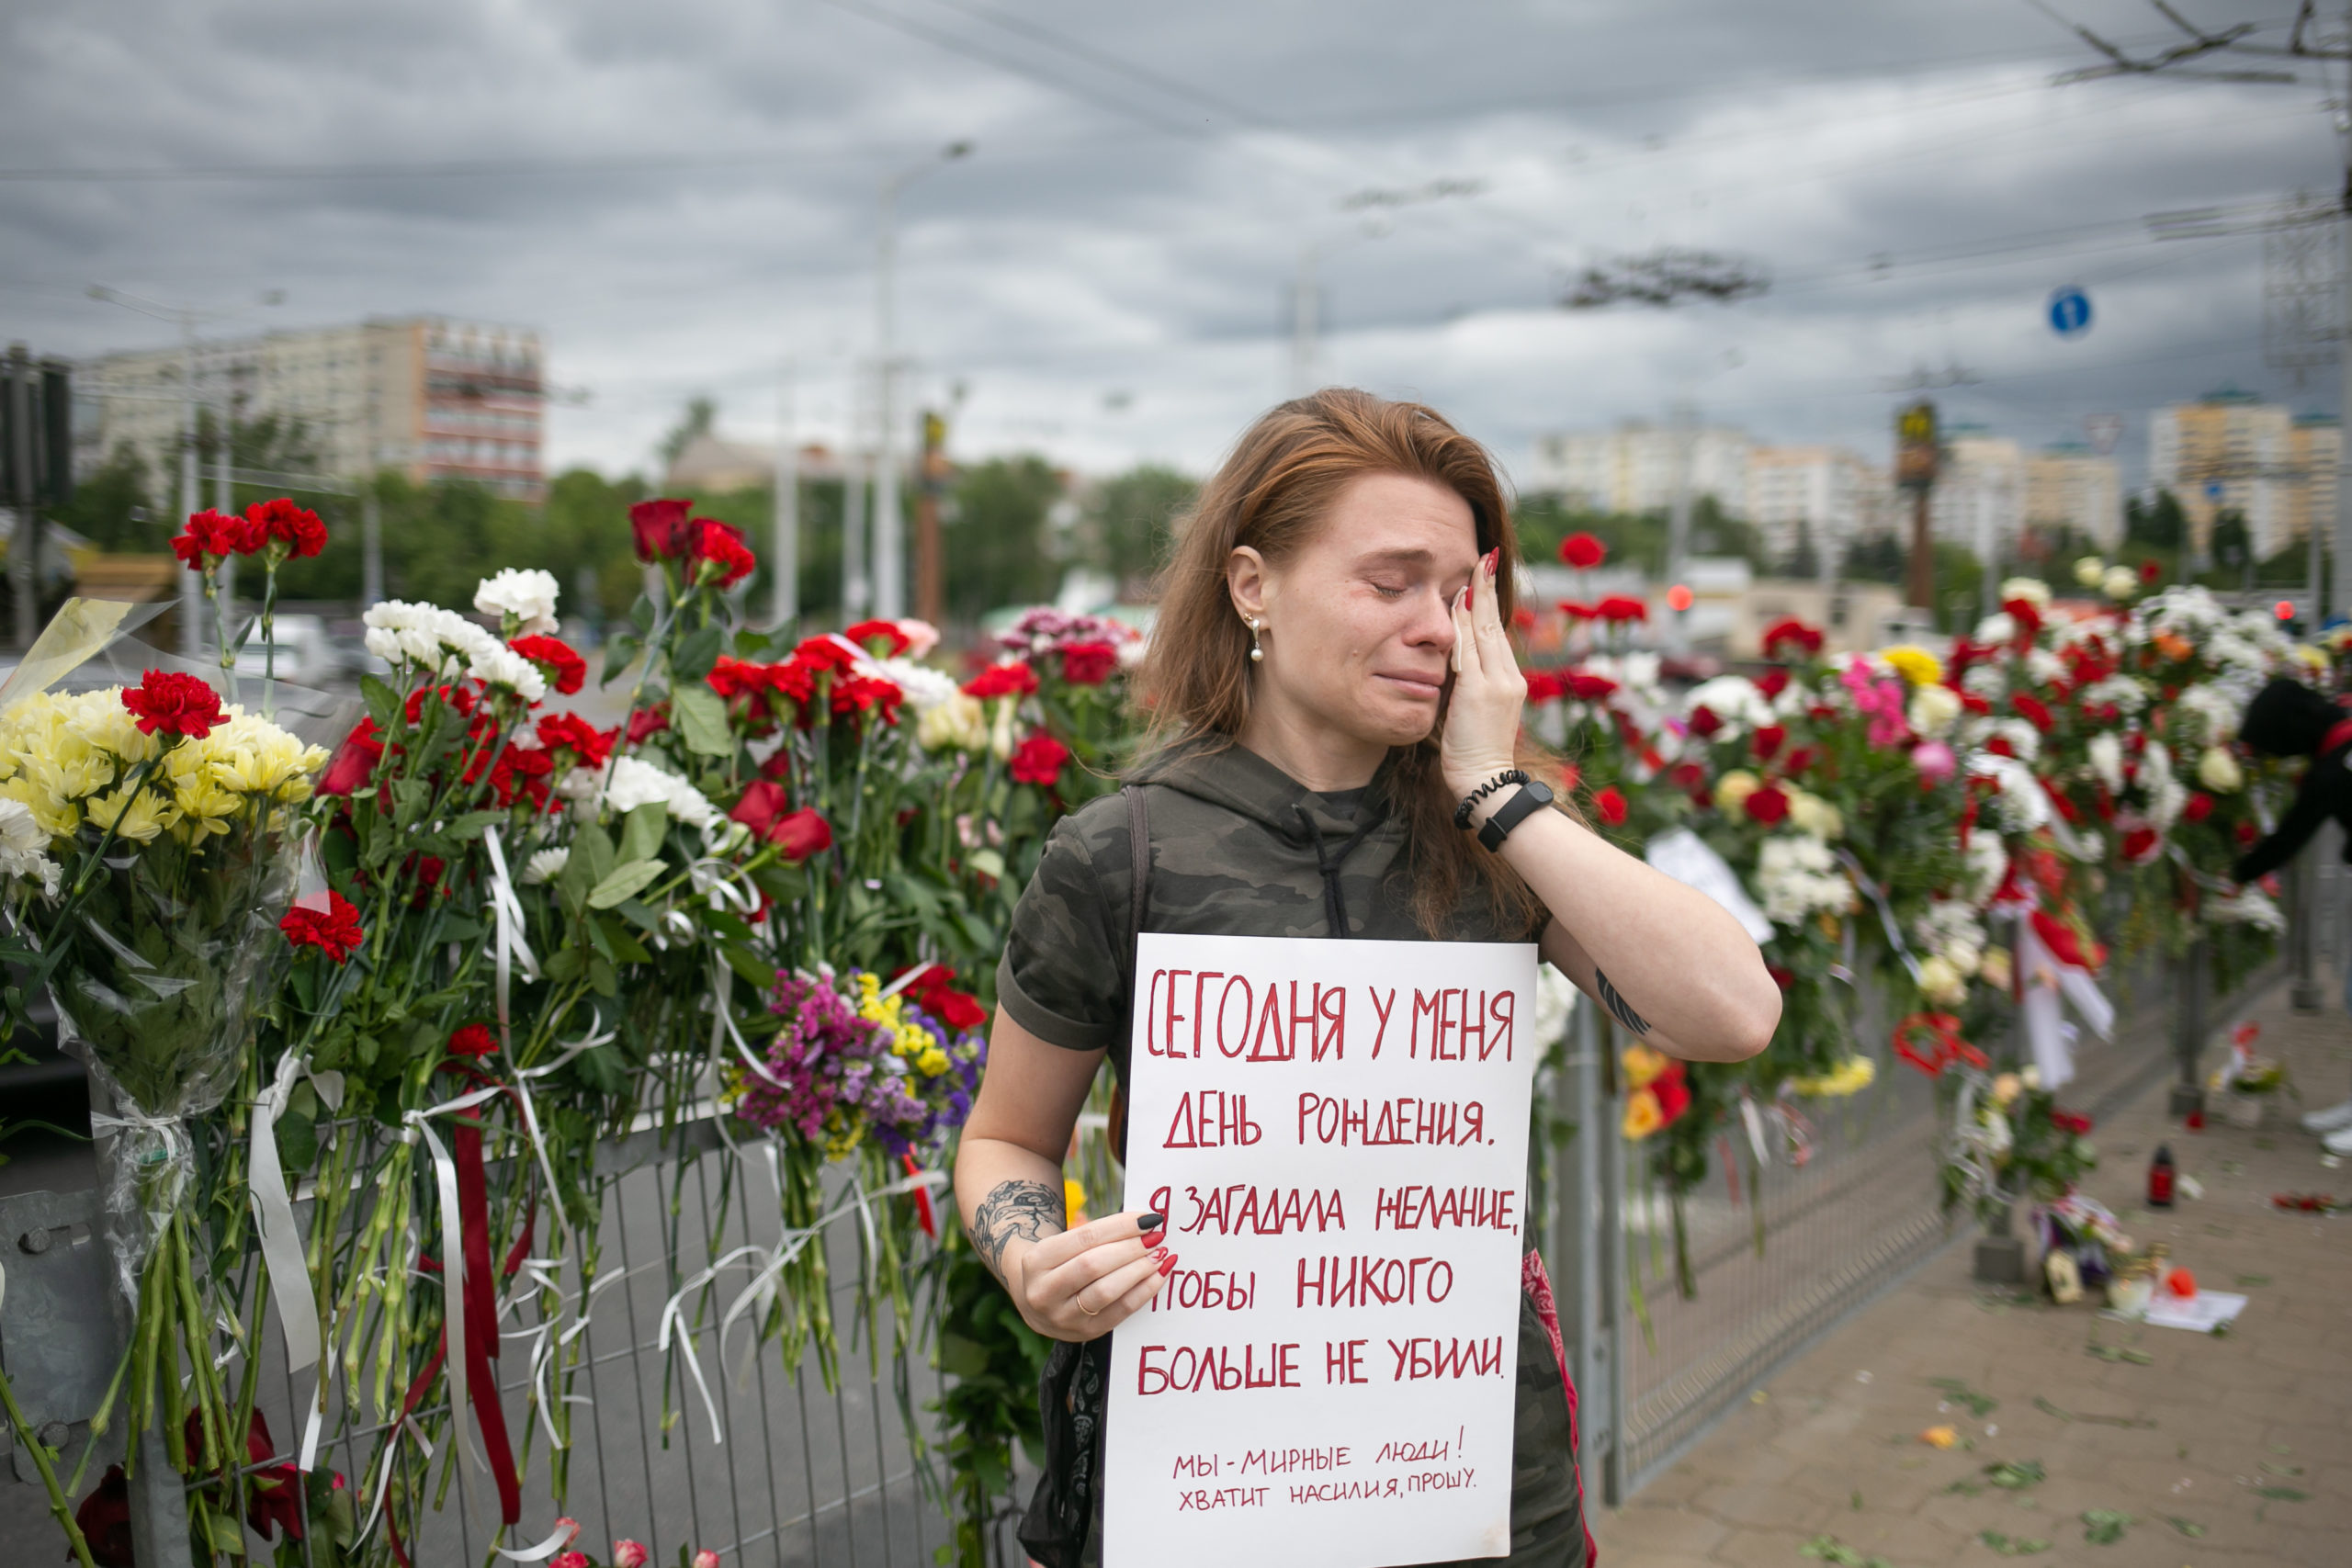 Uma jovem mulher chora perto do memorial popular em homenagem a Aleksandr Taraikovsky, um manifestante assassinado pela polícia. Seu cartaz diz “Hoje é meu aniversário. Meu pedido é que não matem mais ninguém. Somos da paz! Chega de violência, estou pedindo”. Minsk, próximo à estação de metrô Pushkinskaya, 12/08/2020